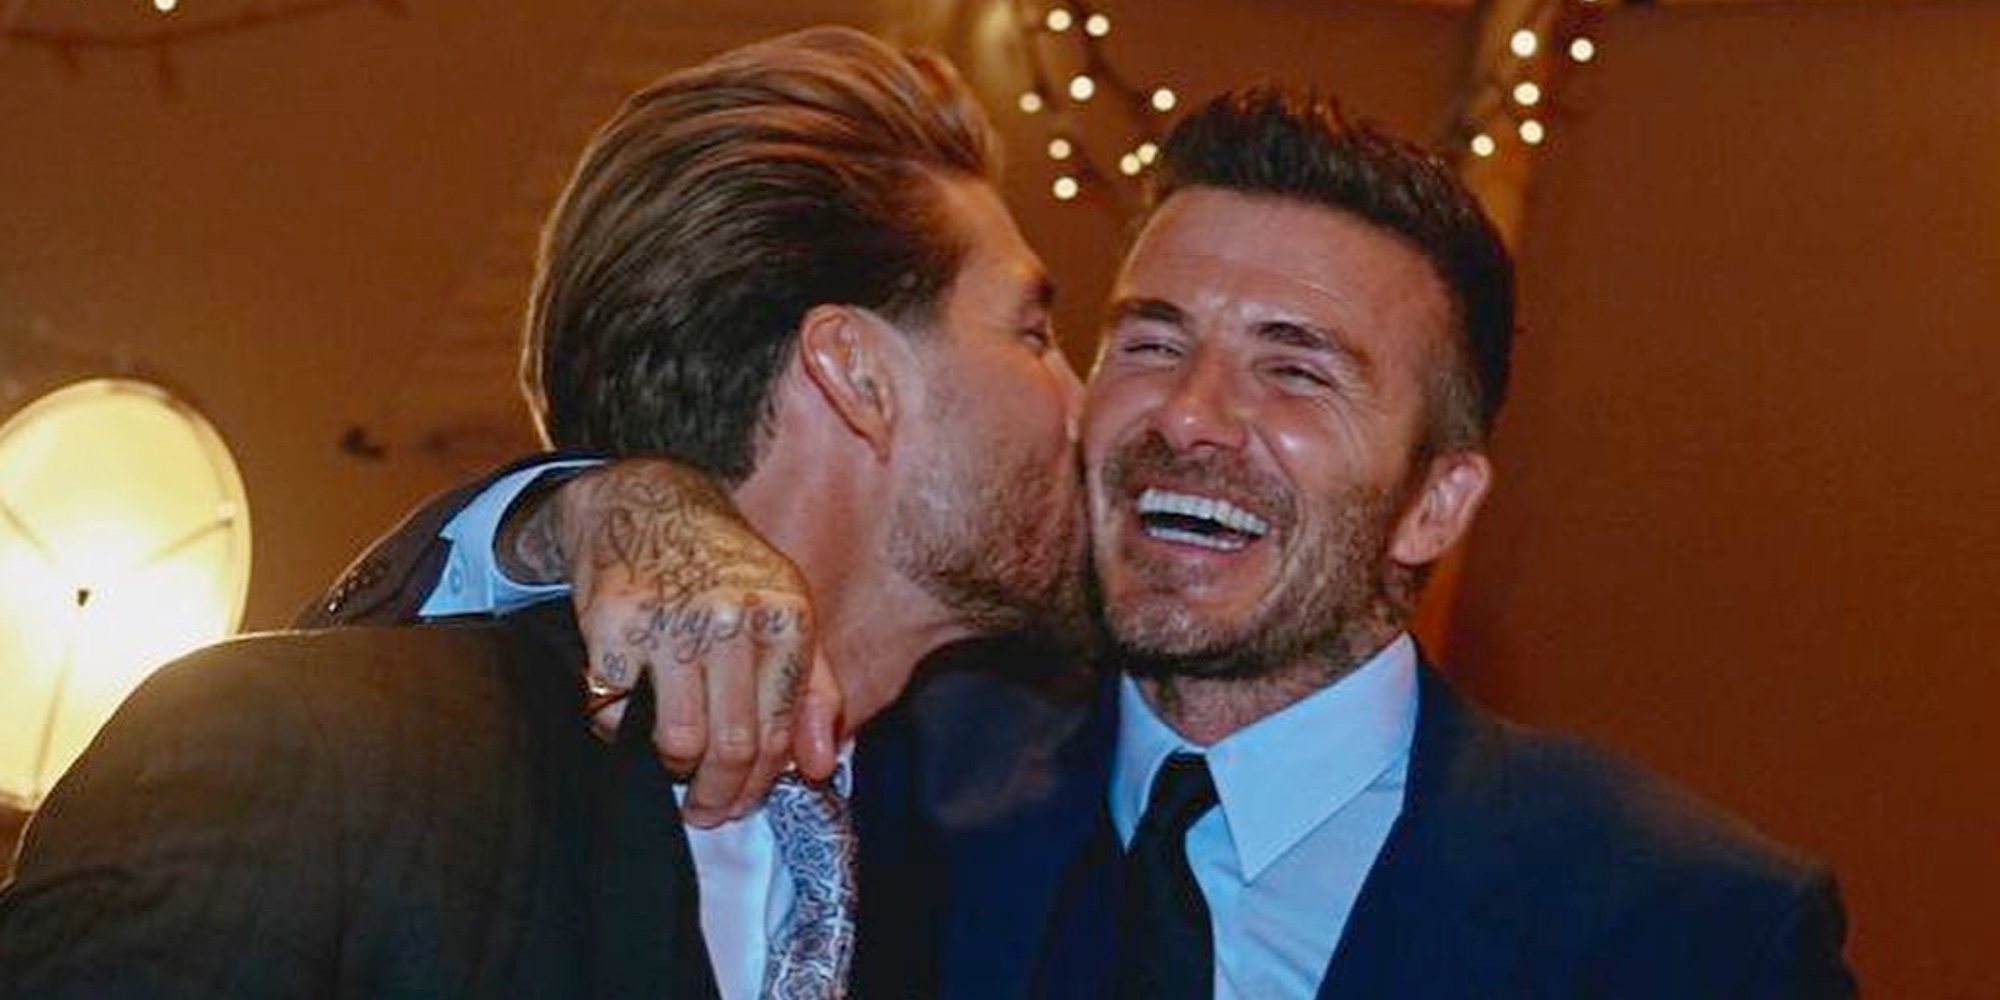 David Beckham, el invitado privilegiado de la boda de Sergio Ramos y Pilar Rubio: publica 2 fotos de la fiesta